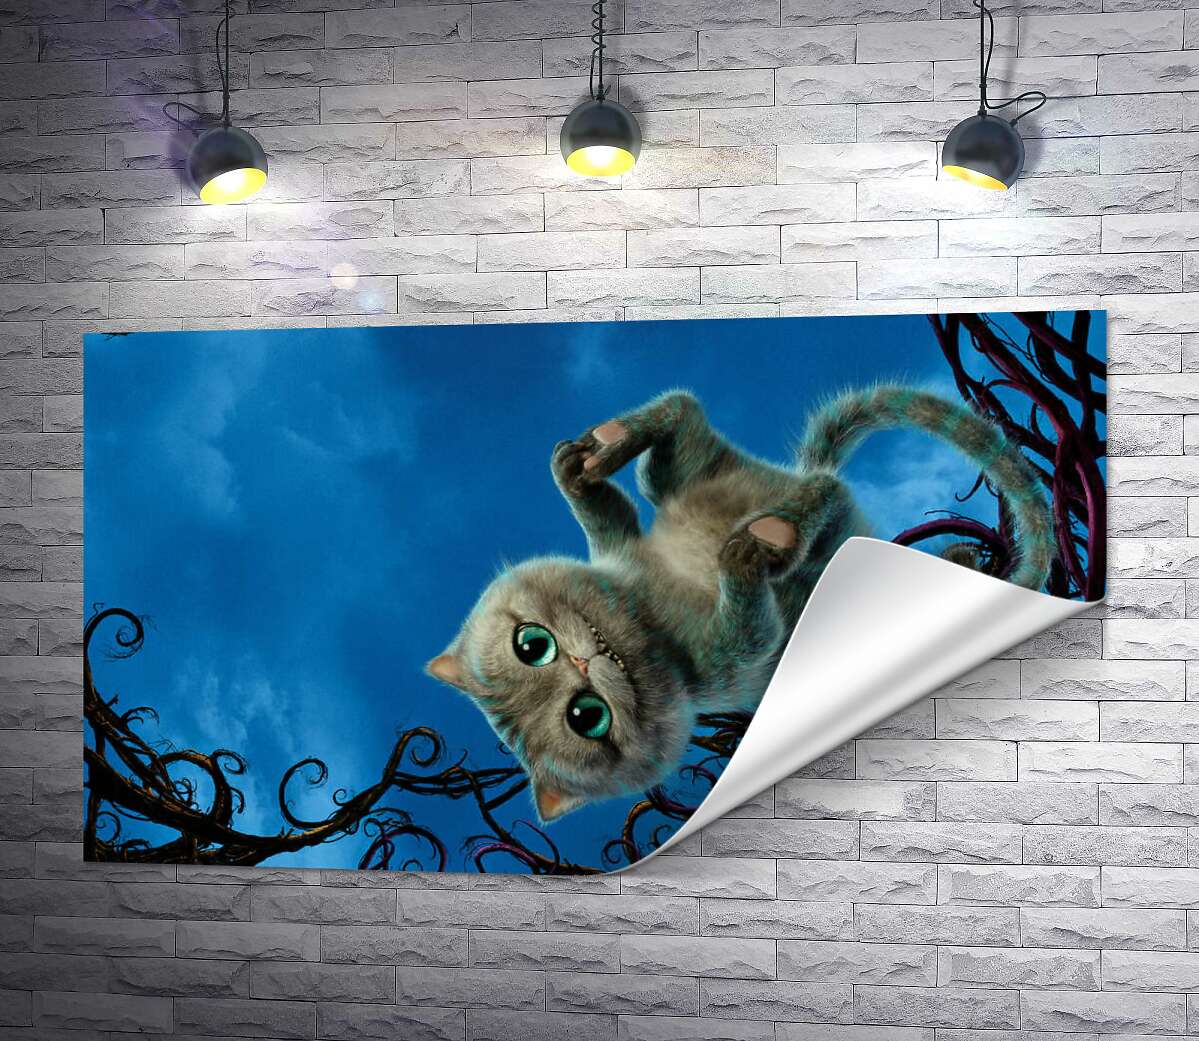 друк Чеширський кіт широко посміхається на постері до фільму "Аліса в країні див" (Alice in Wonderland)